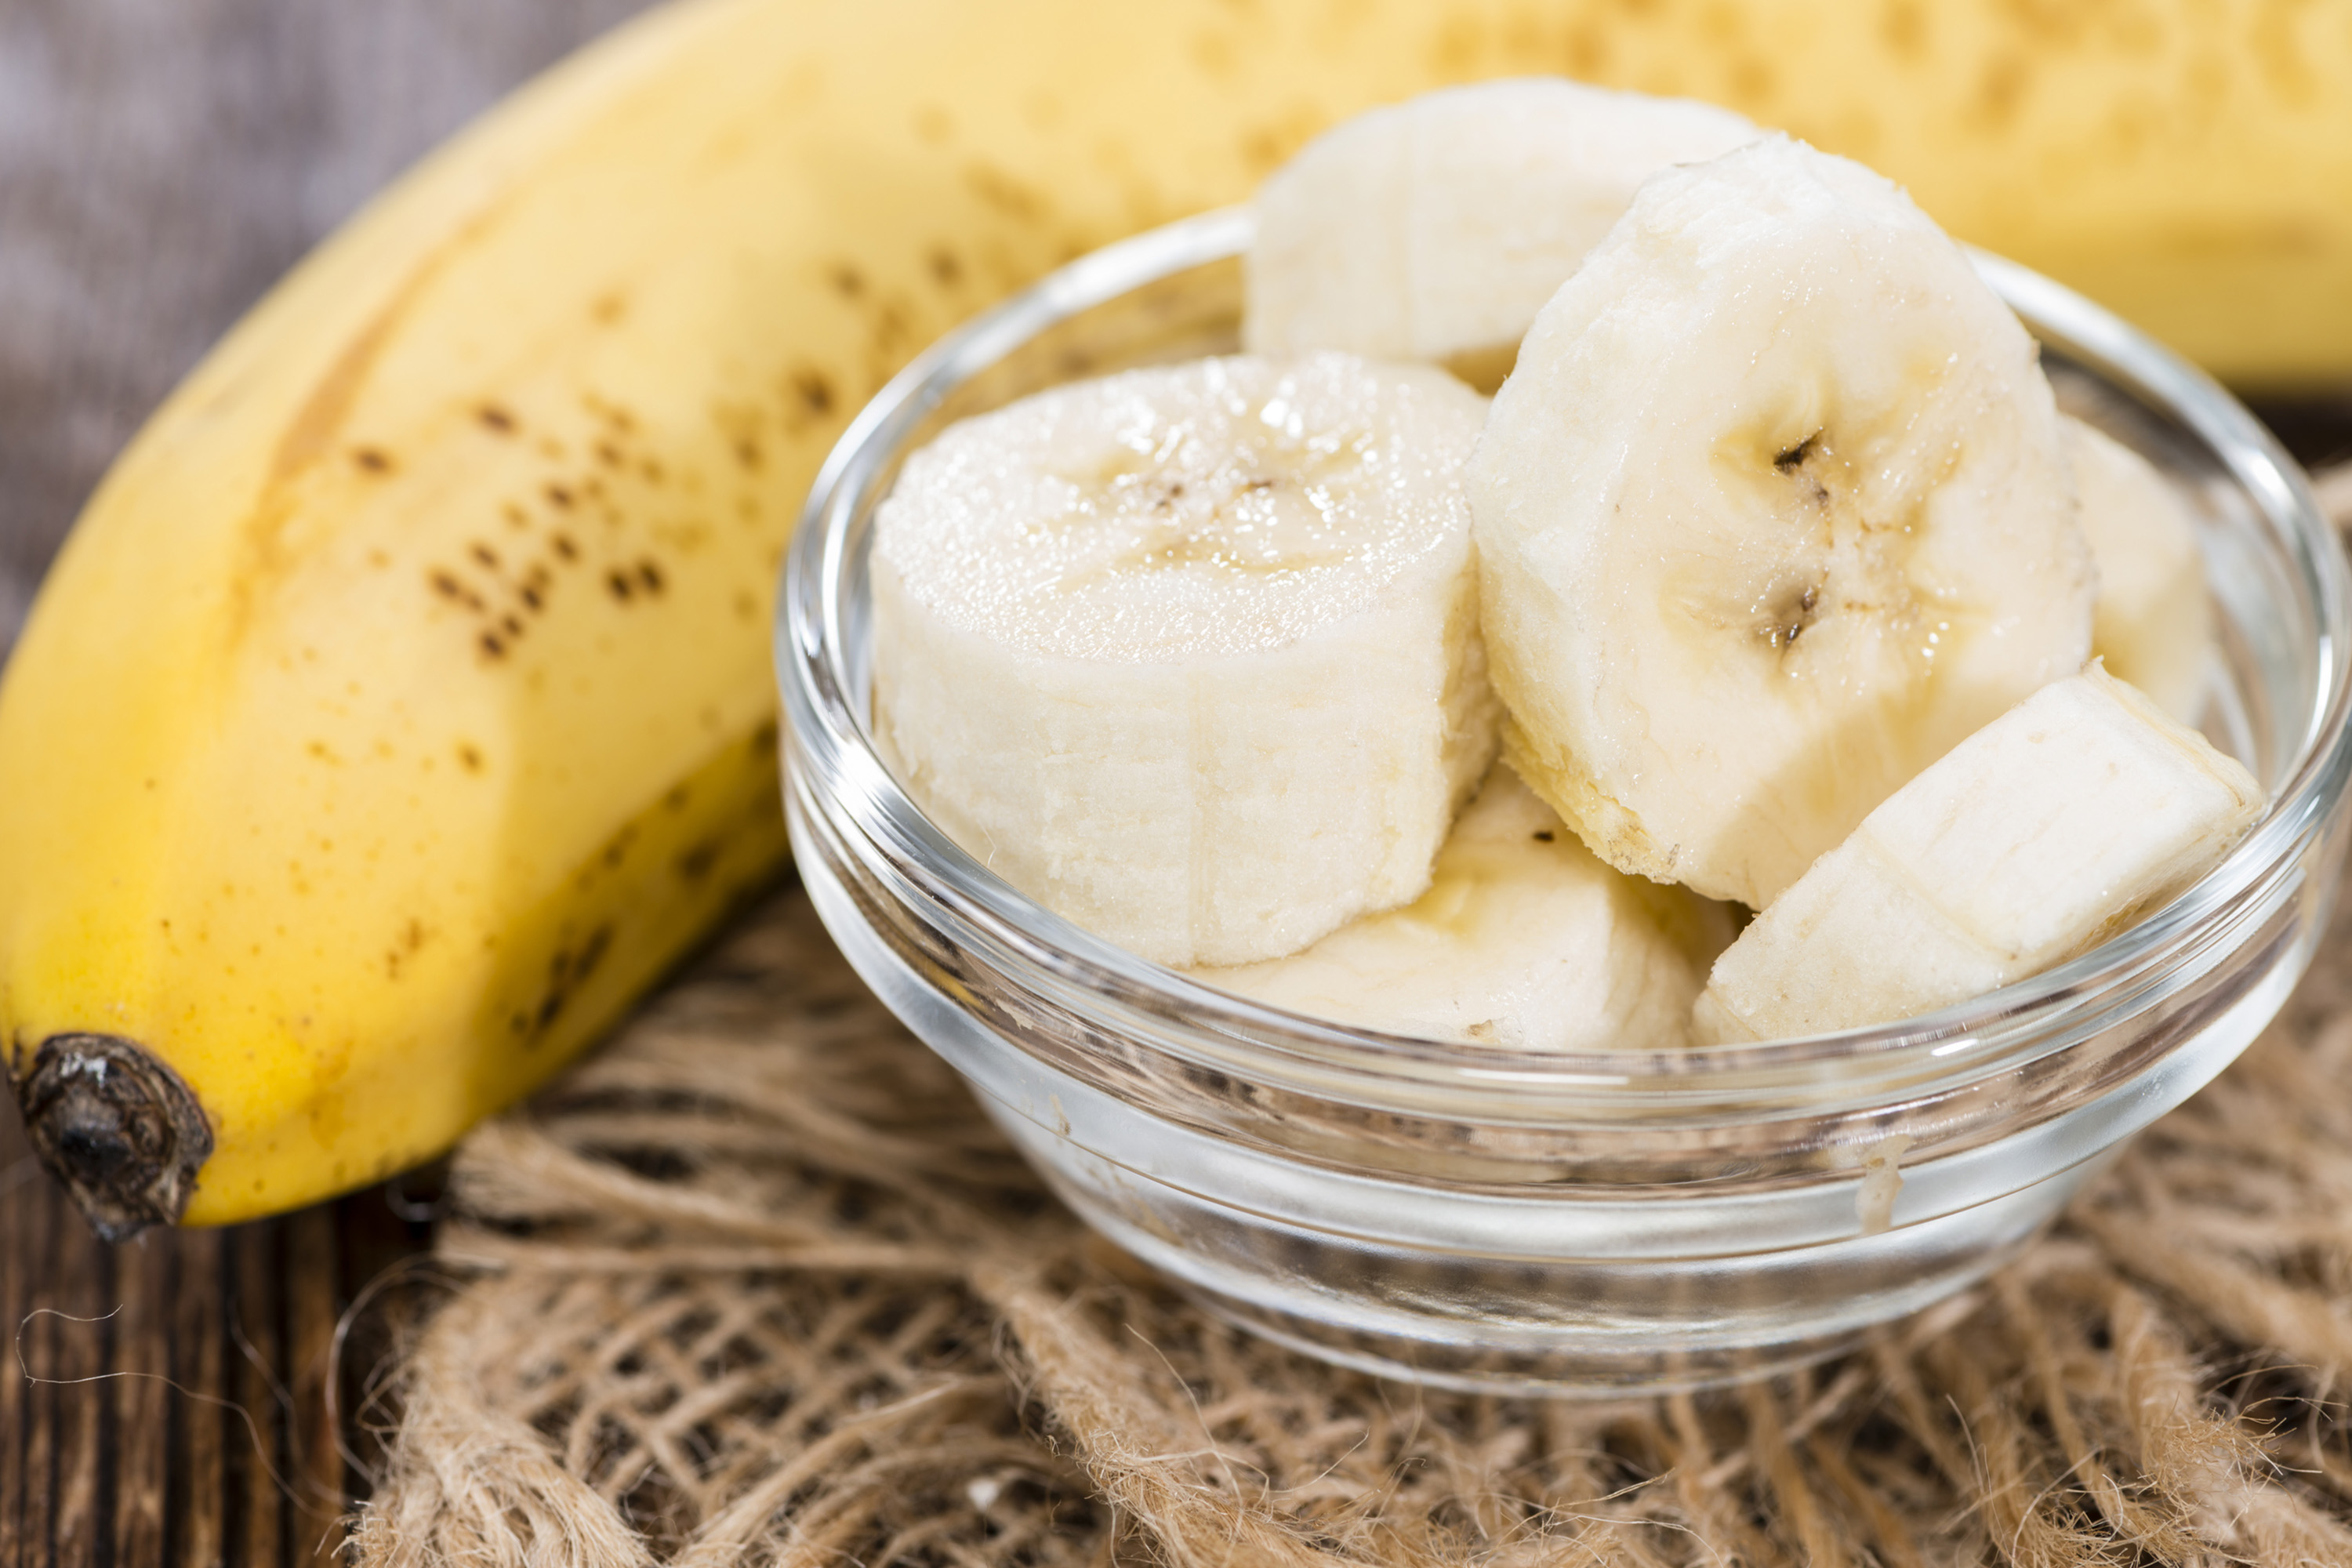 Banana pode desaparecer em cinco anos, diz estudo | VEJA